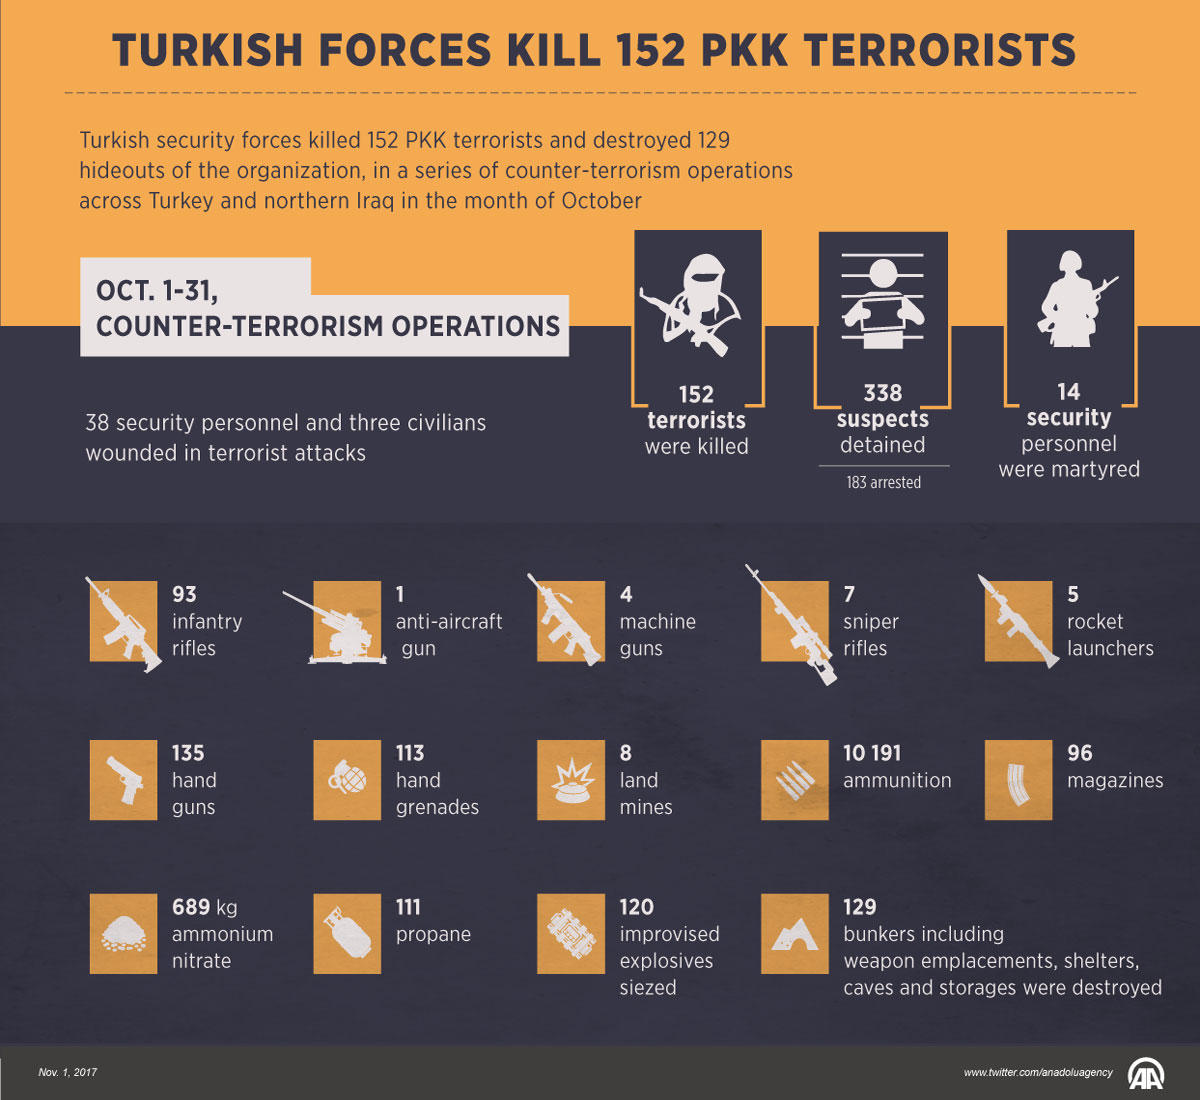 Turkish forces kill 152 PKK terrorists in October